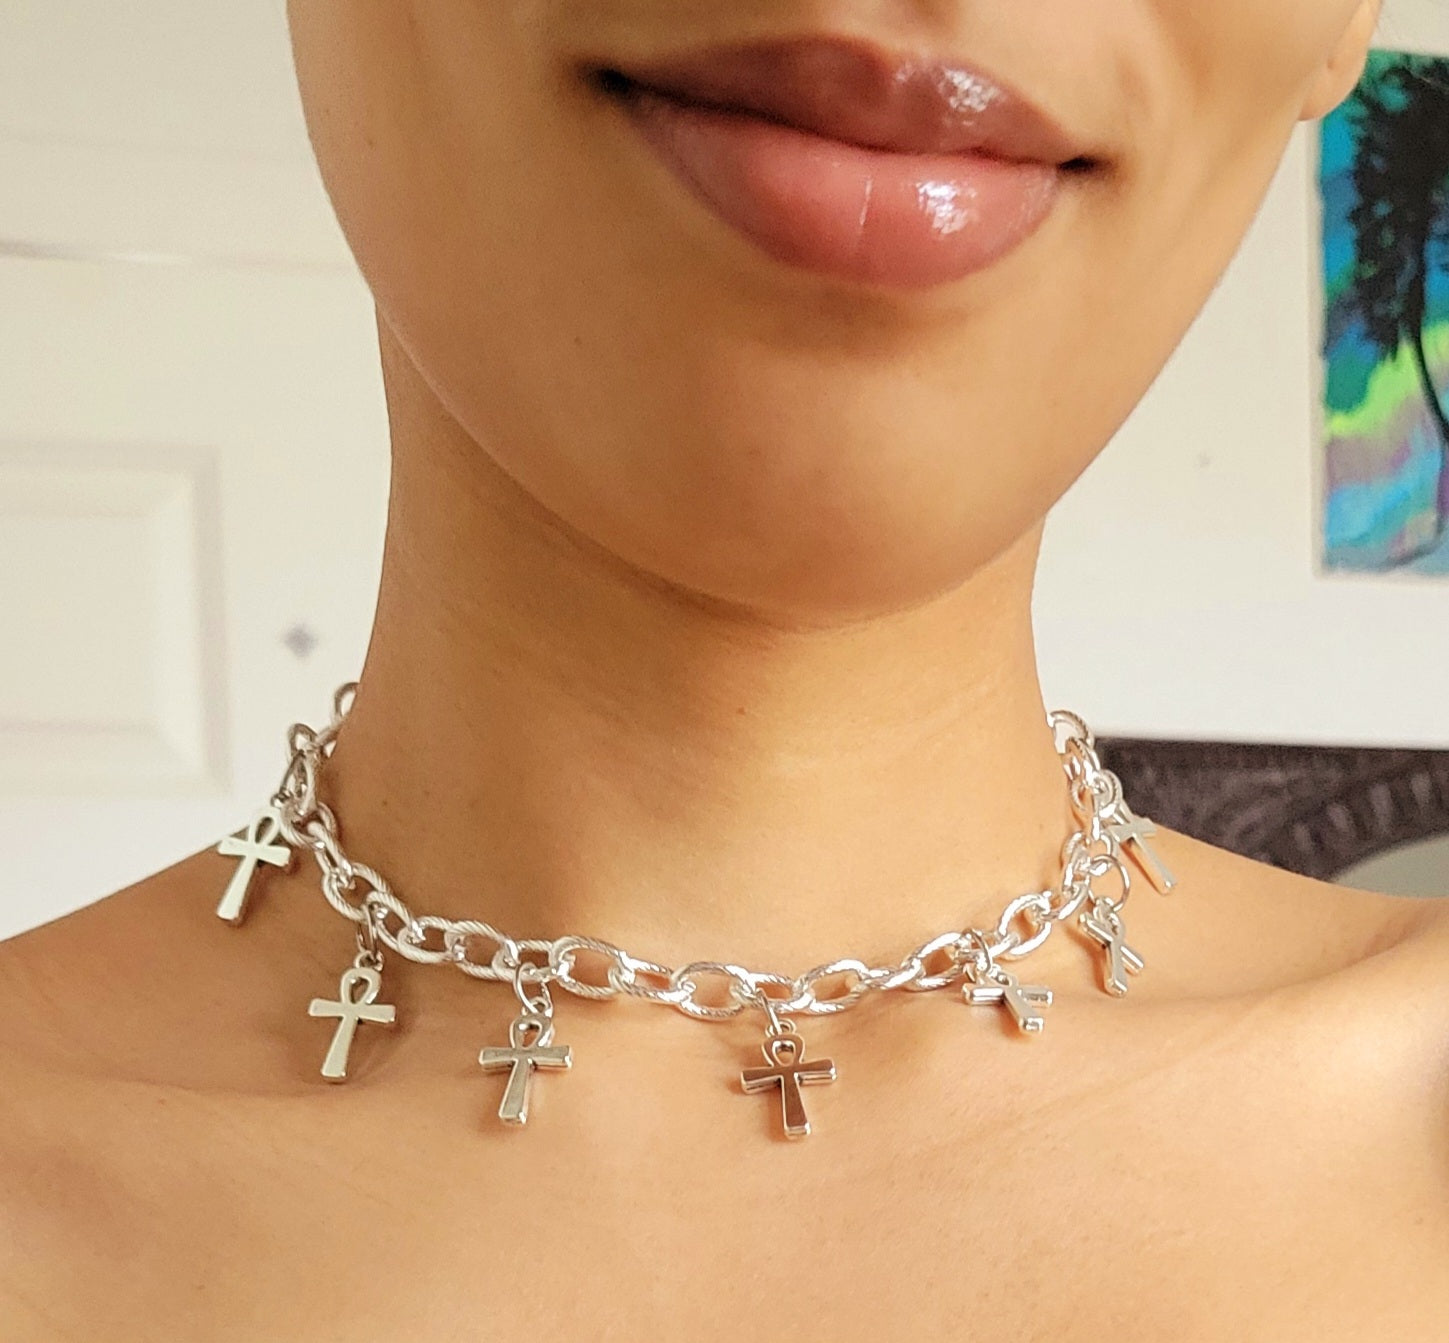 Ankh chain choker necklace